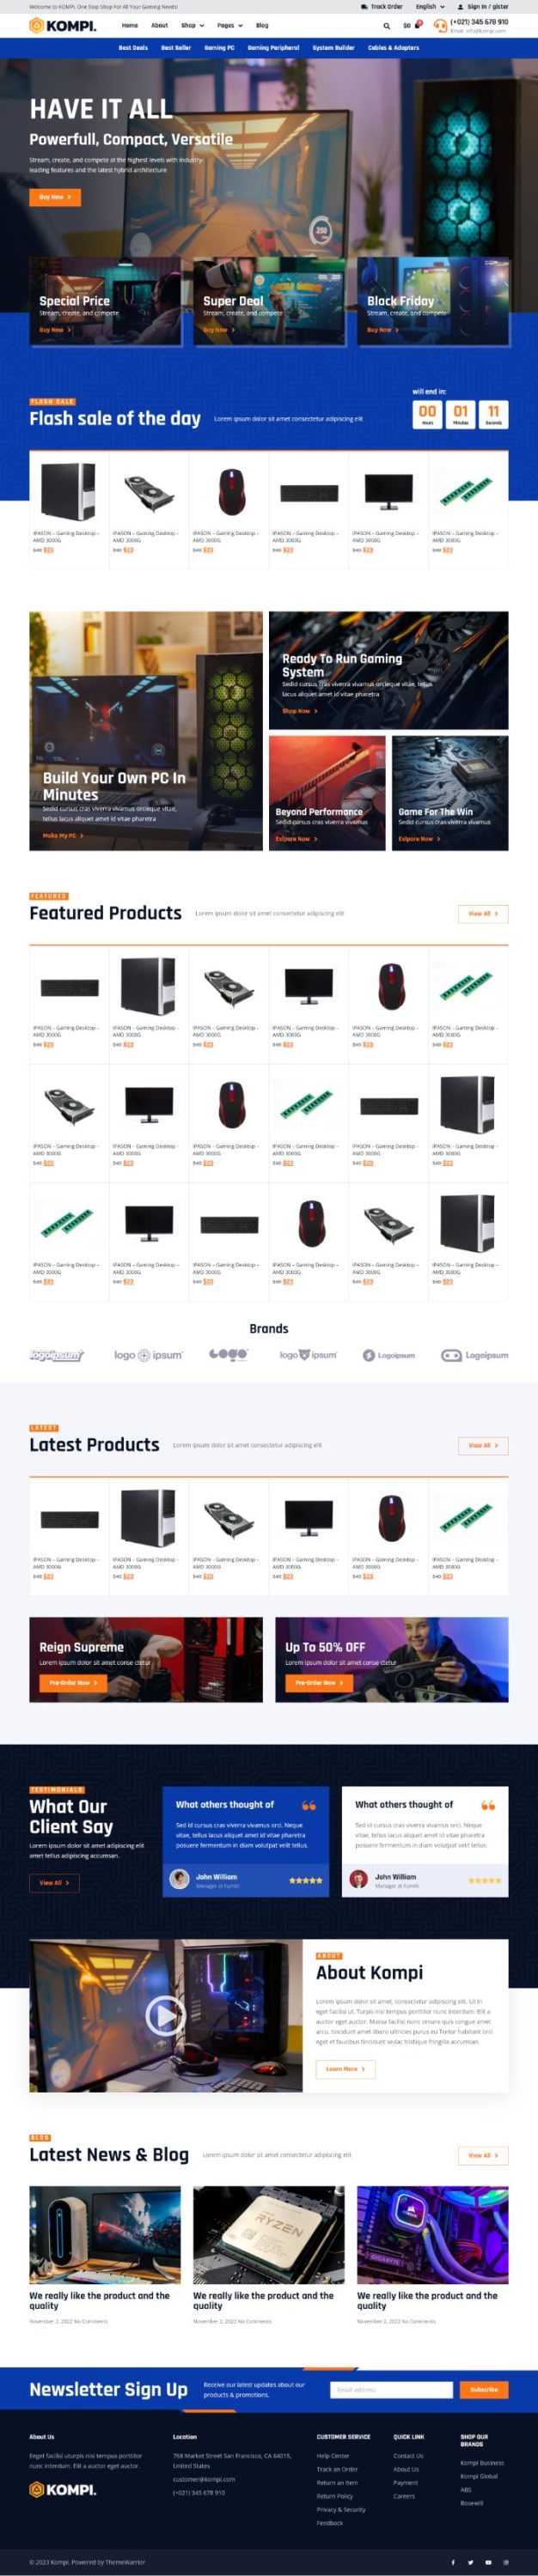 Mẫu website thương mại điện tử - Kompi teamplate kit